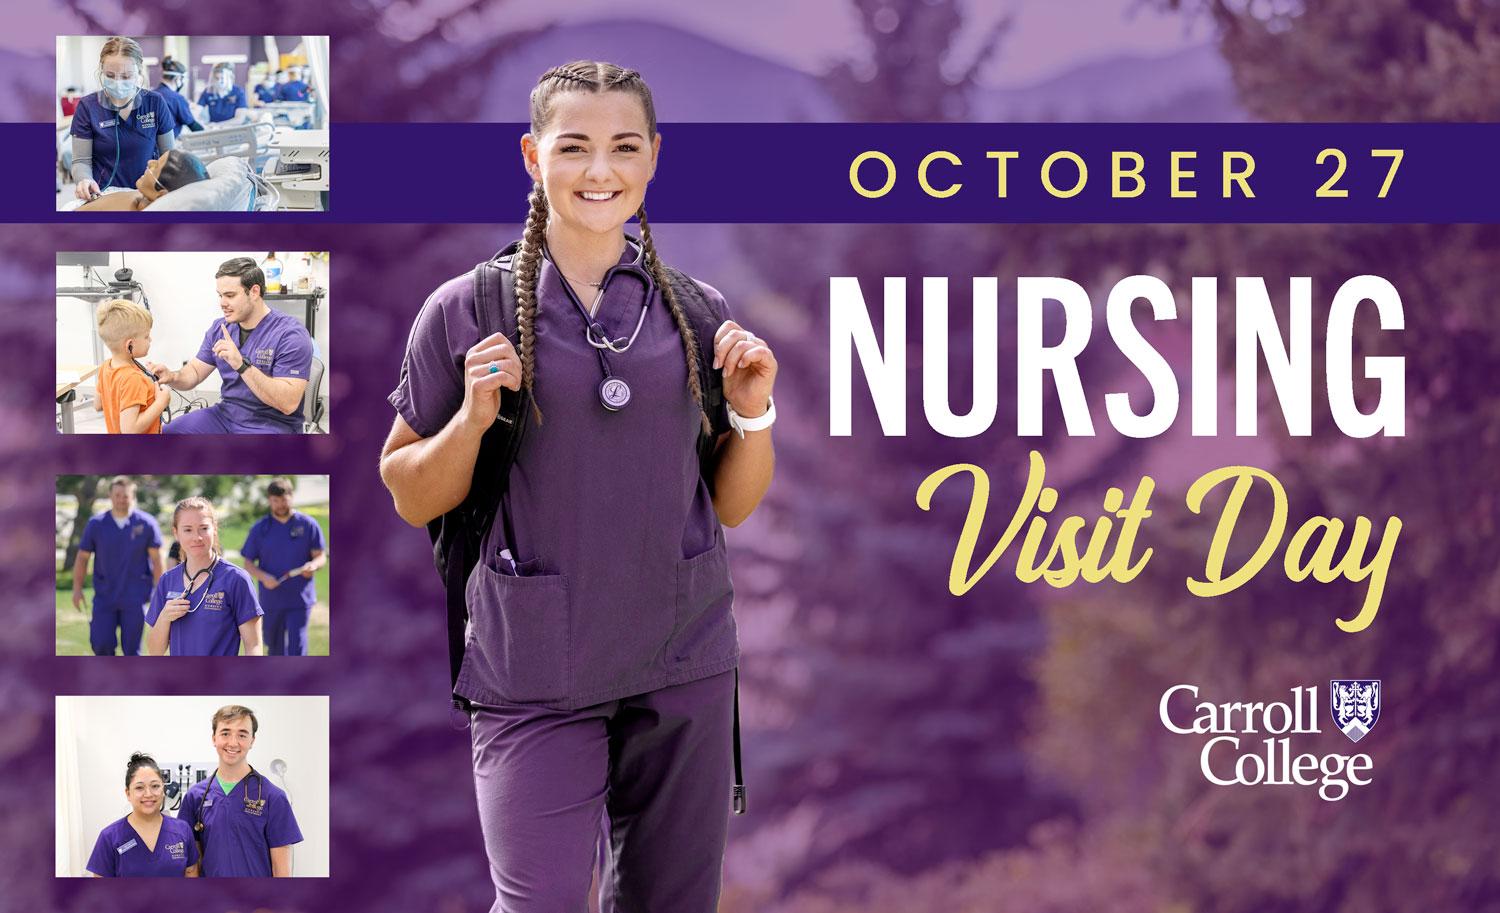 Nursing Visit Day